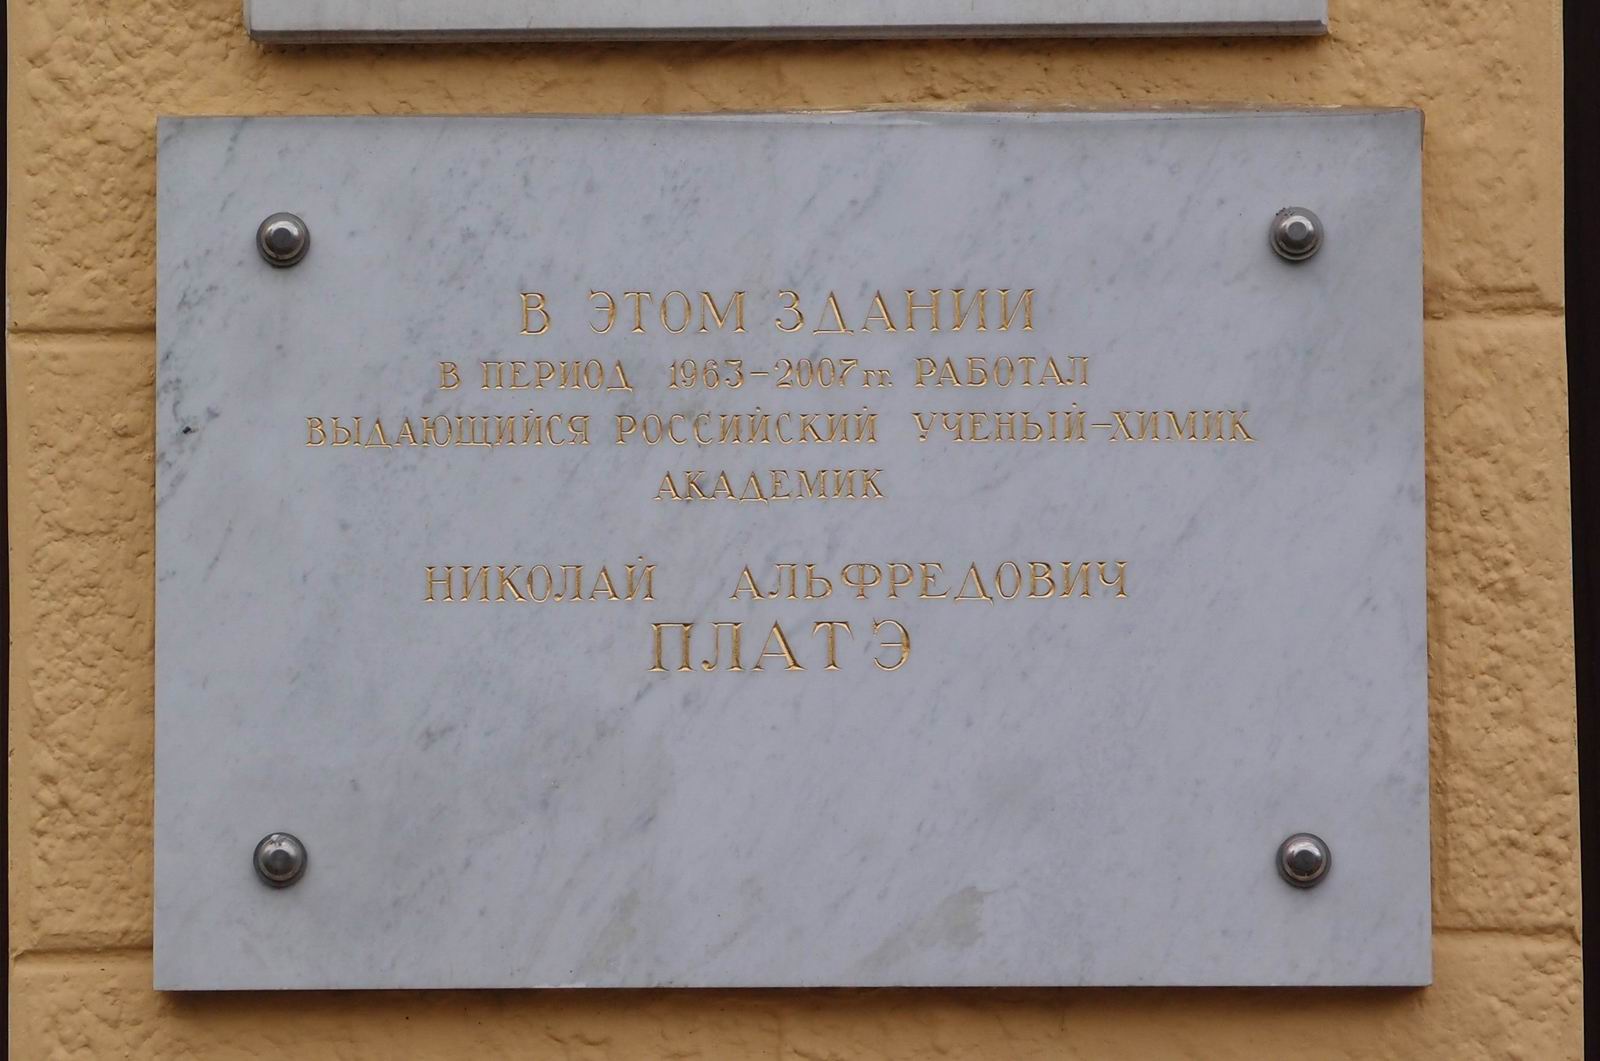 Мемориальная доска Платэ Н.А. (1934–2007), на Ленинском проспекте, дом 29, строение 2, открыта в феврале 2008.